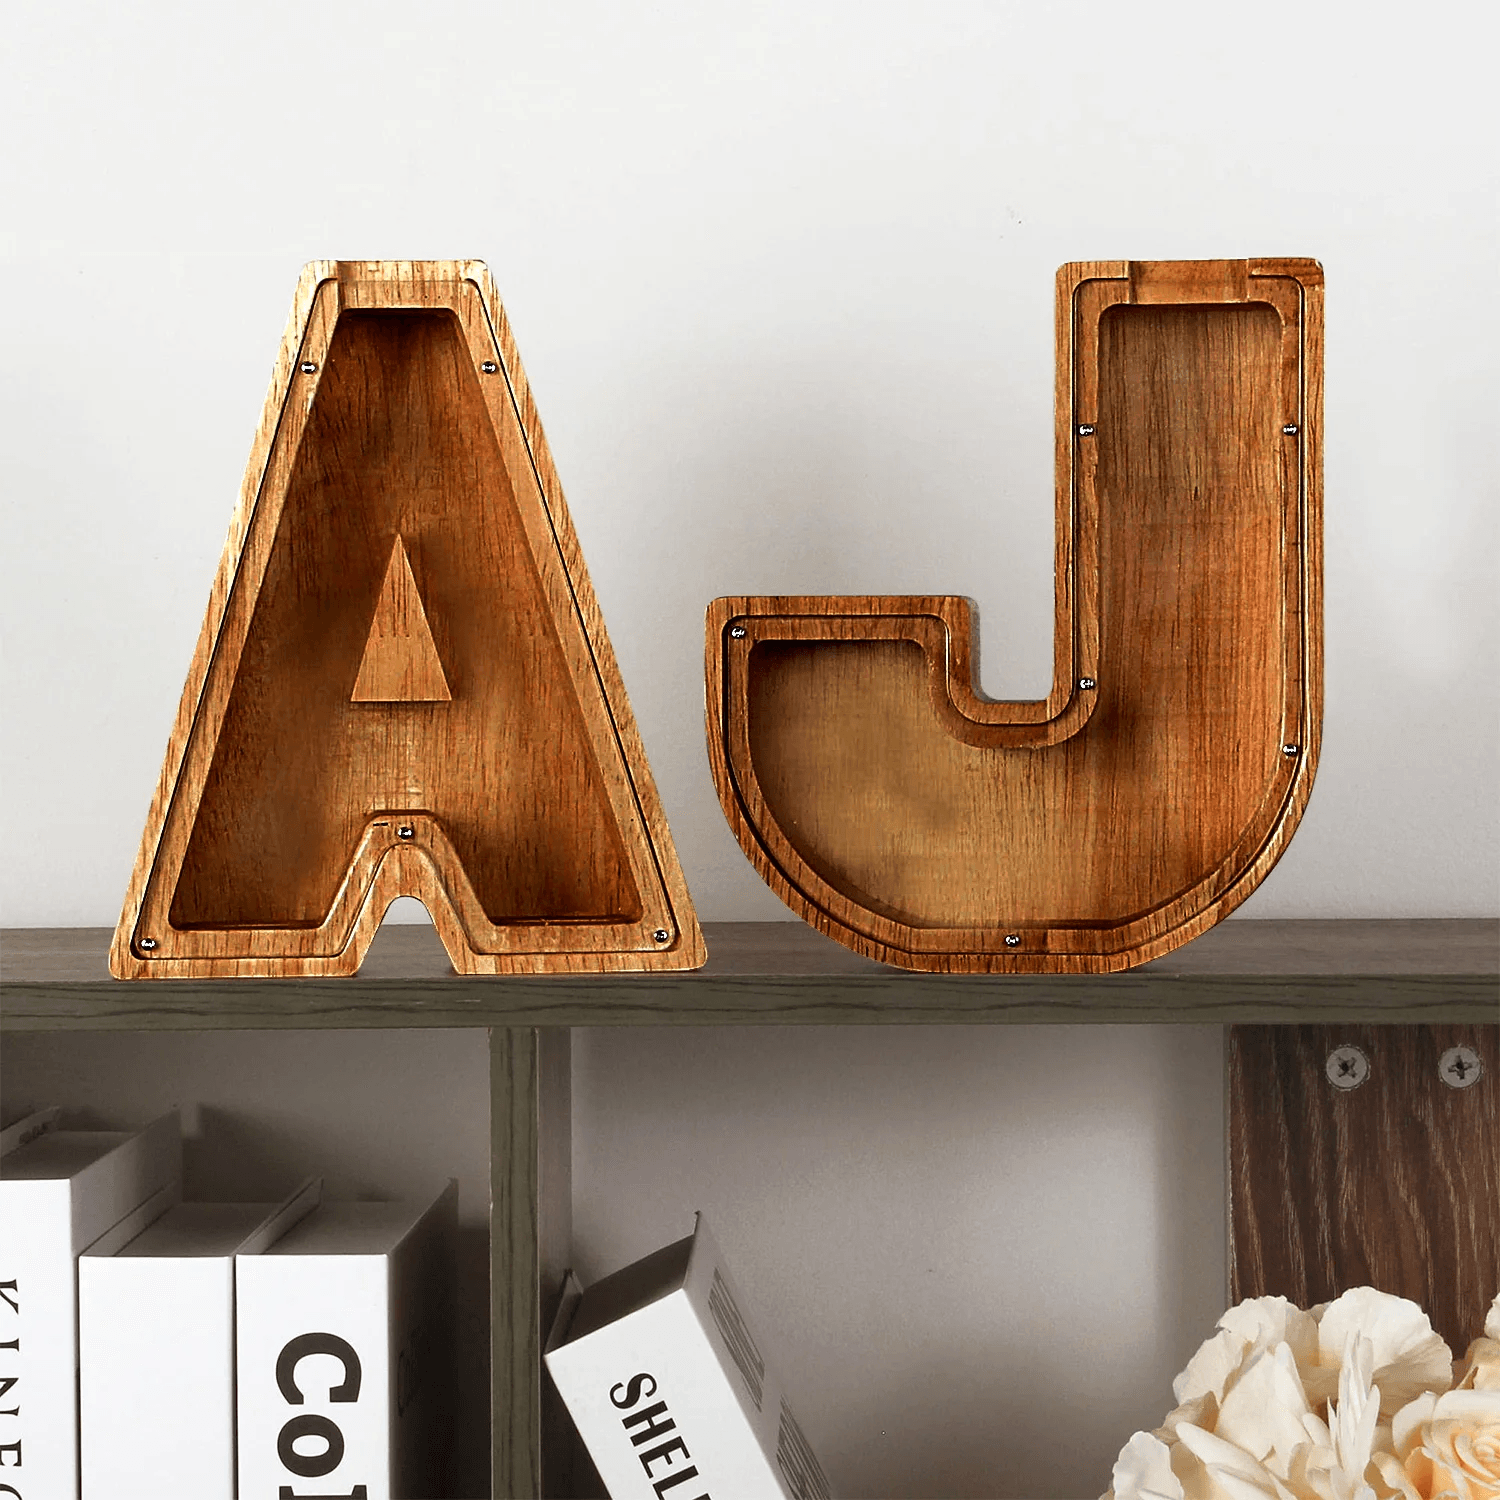 Houten spaarpot letters A en J op een plank als decoratie.